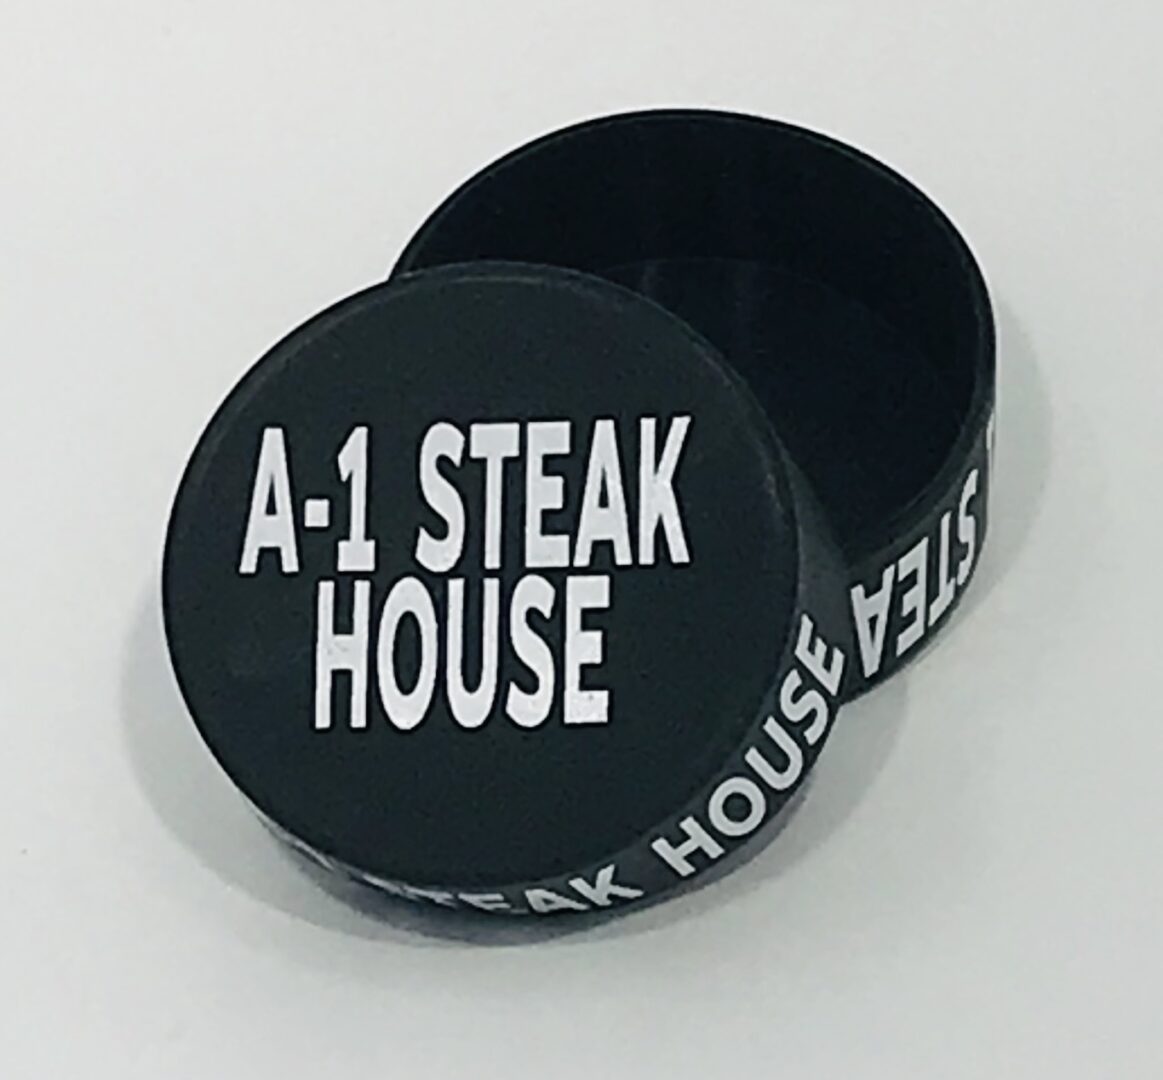 A-1 Steak House